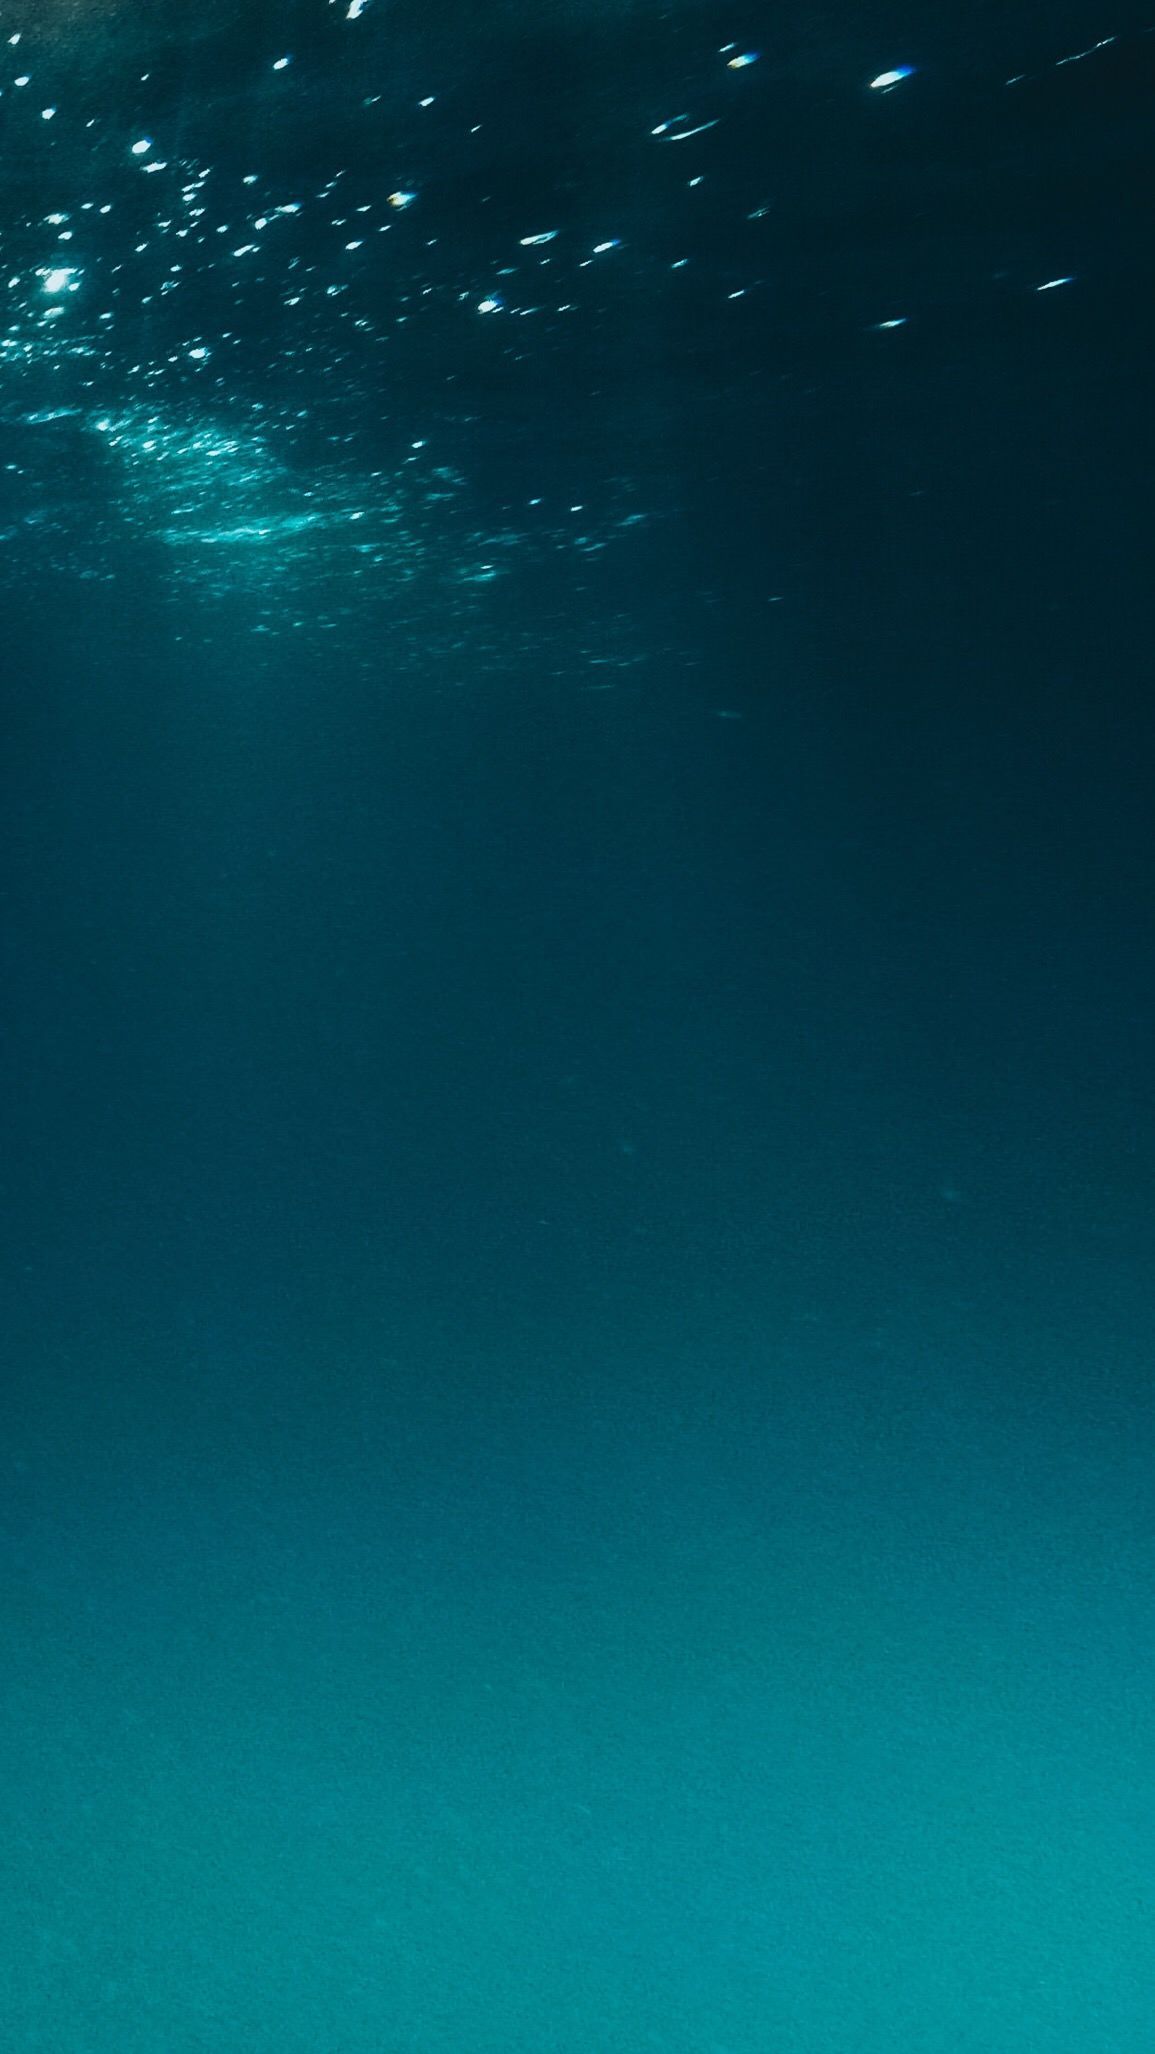 Underwater. Underwater wallpaper, Underwater background, Underwater